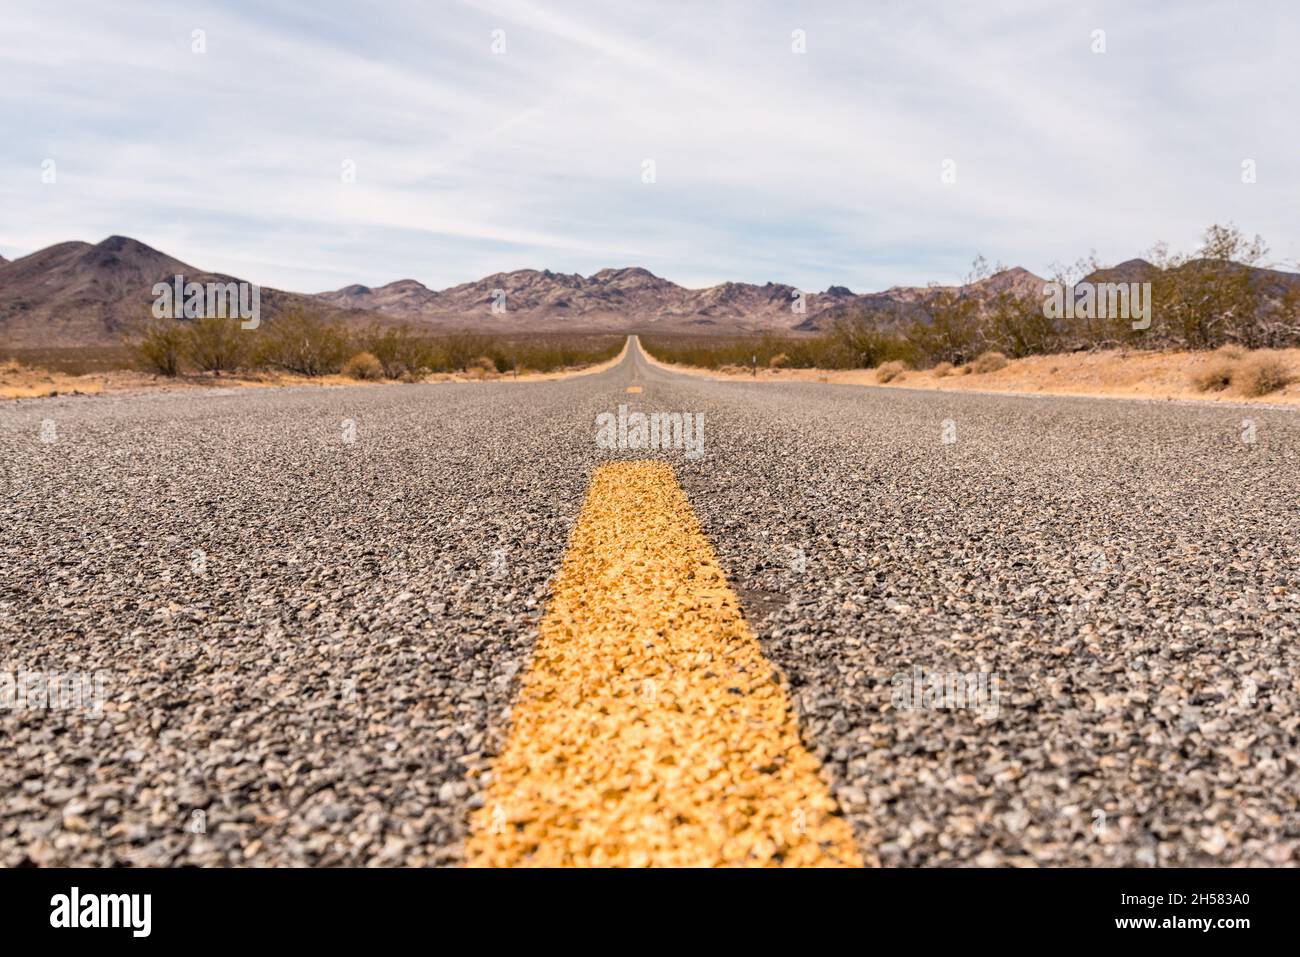 Autoroute dans le paysage pittoresque de la vallée du désert, États-Unis Banque D'Images